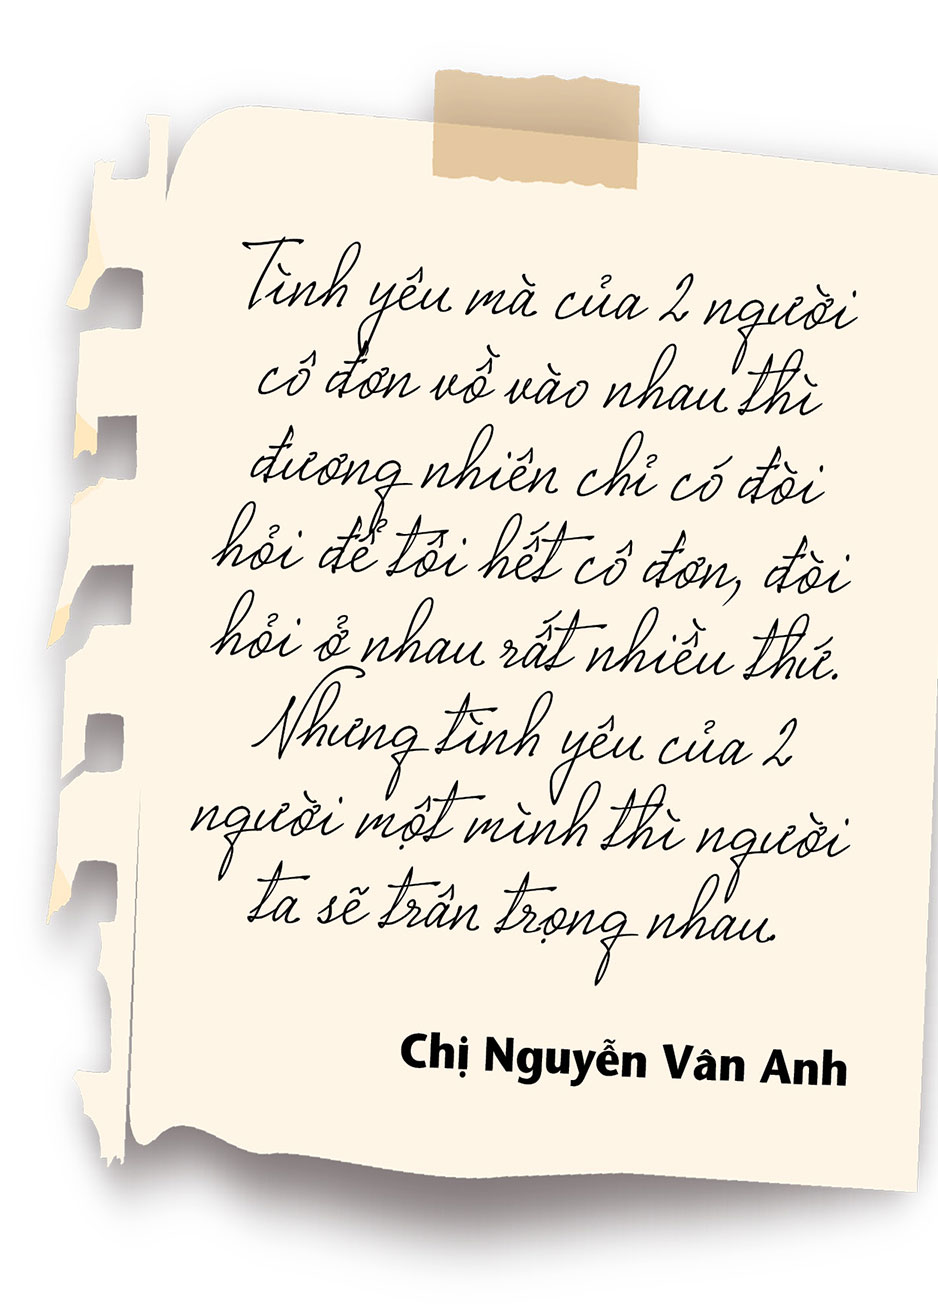 Chuyên gia về bạo lực giới và gia đình Nguyễn Vân Anh: Tình yêu là một môn học - Ảnh 17.